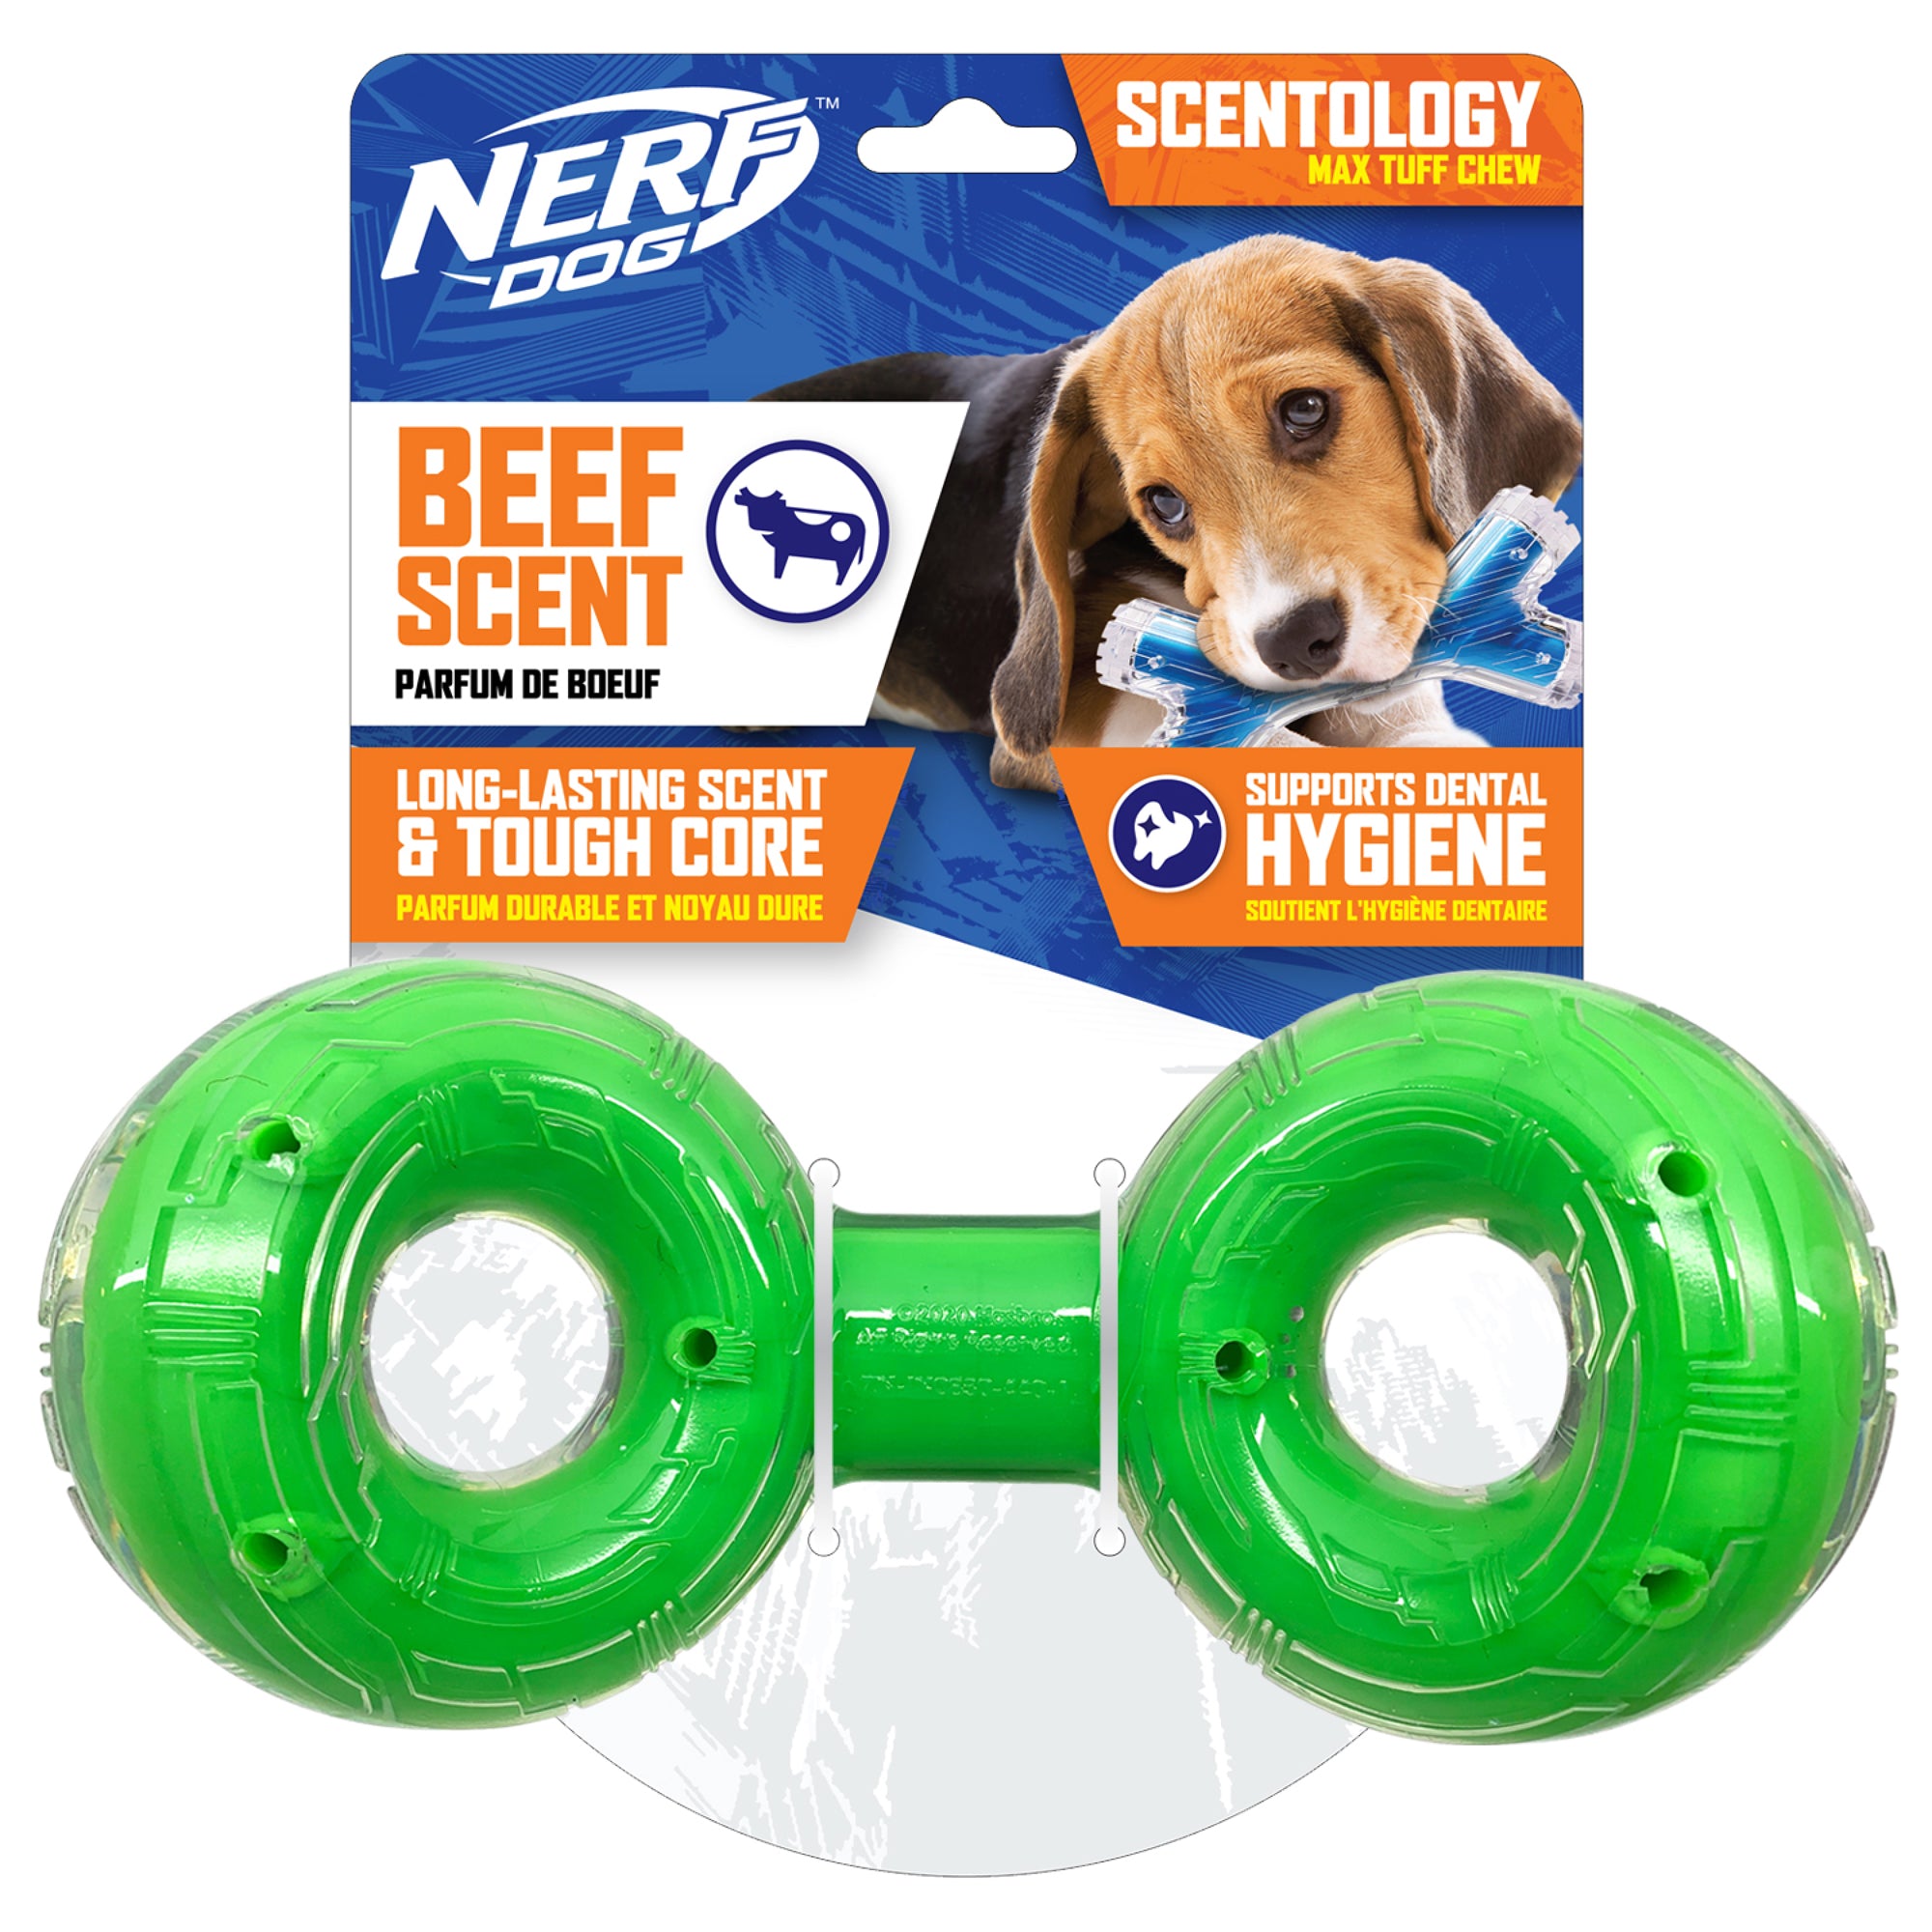 Haltère Scentology Nerf Dog en forme de 8, parfum de bœuf, vert, 21 cm (8,3 po)